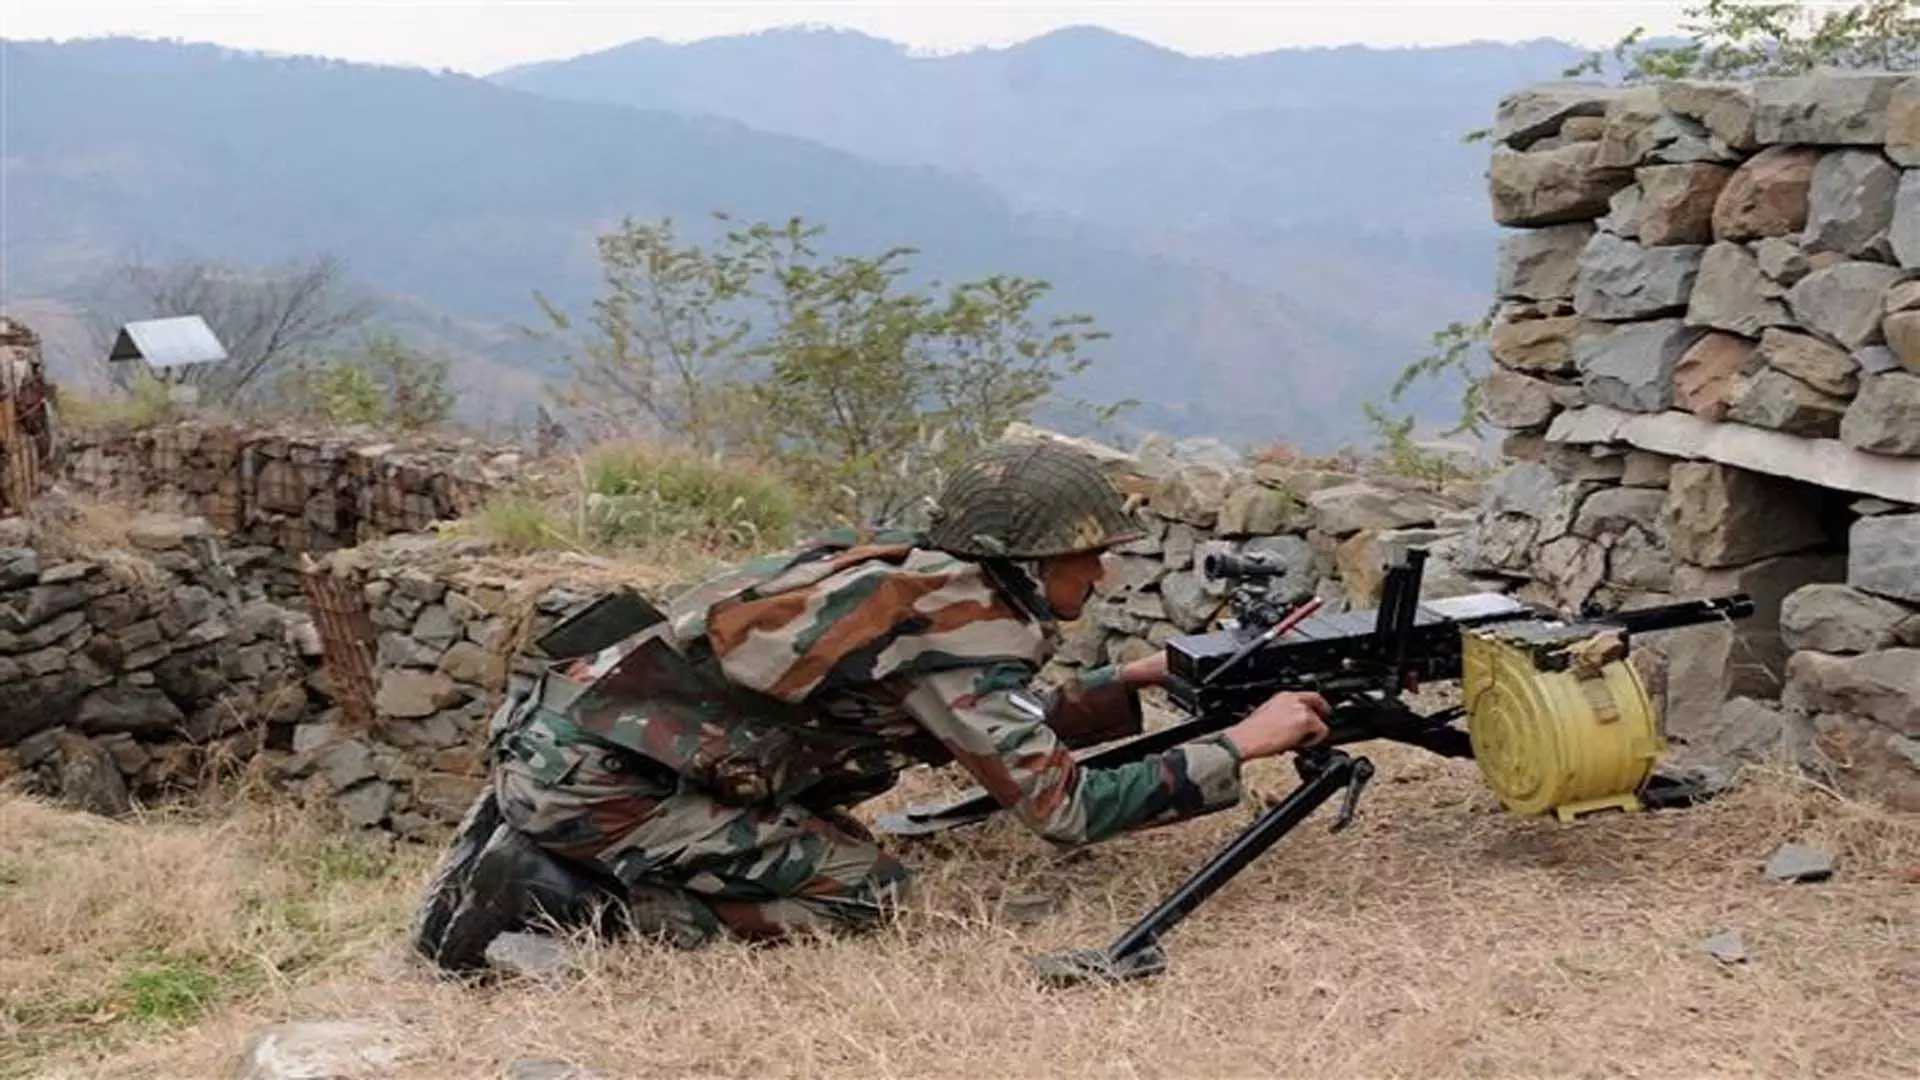 Jammu and Kashmir के पुंछ में नियंत्रण रेखा पर गोलीबारी की खबर